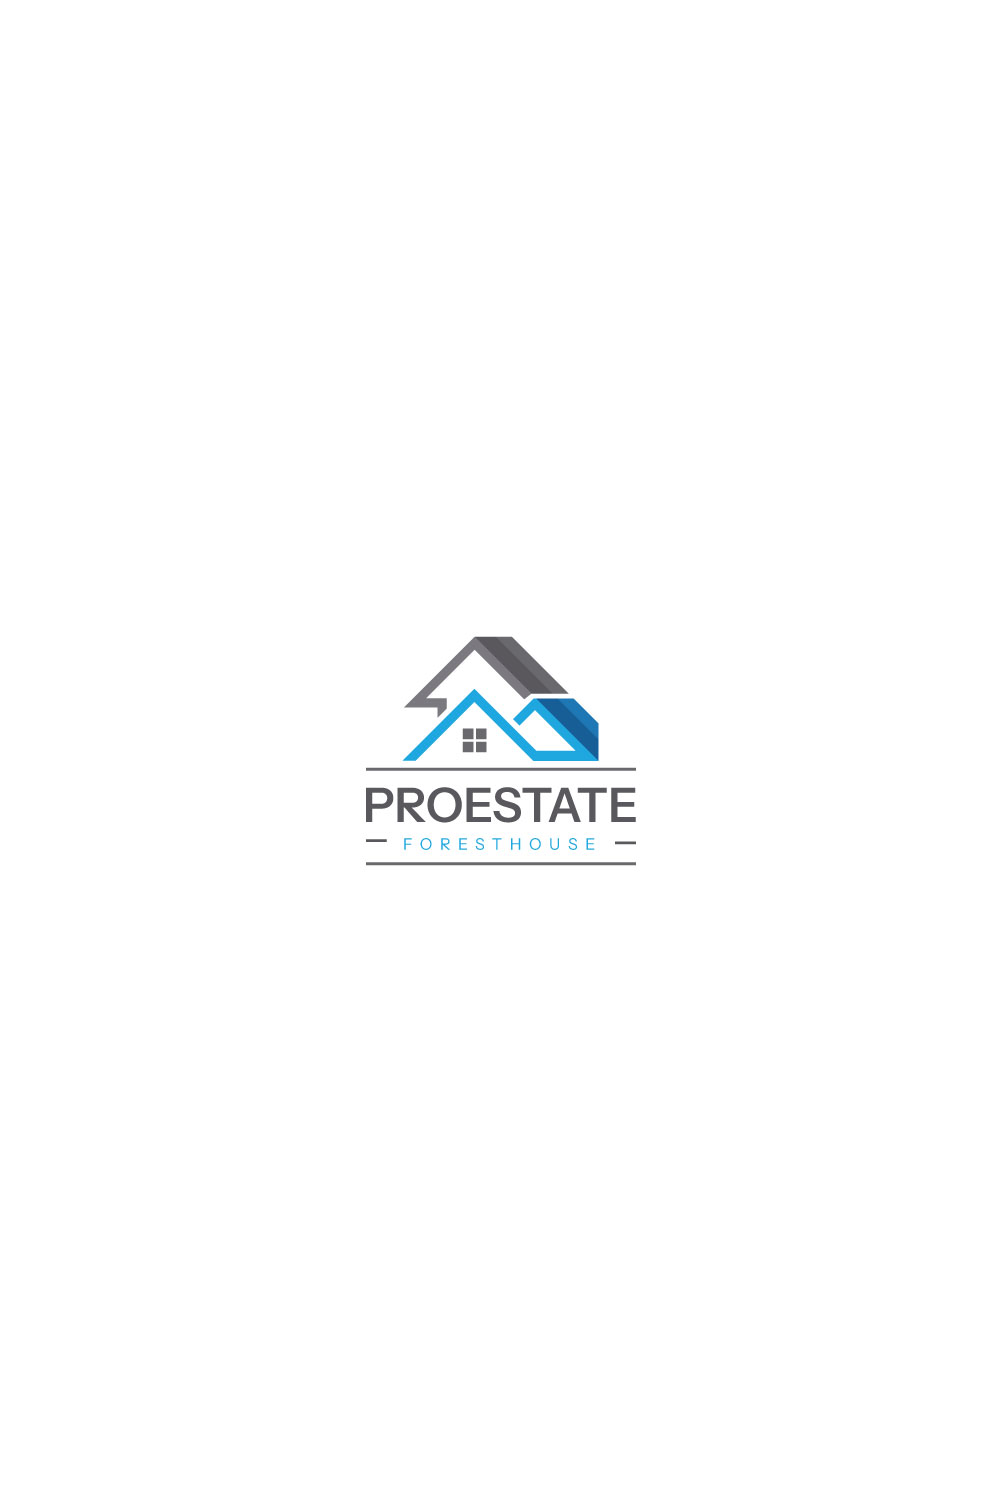 Roof Estate Logo design pinterest preview image.